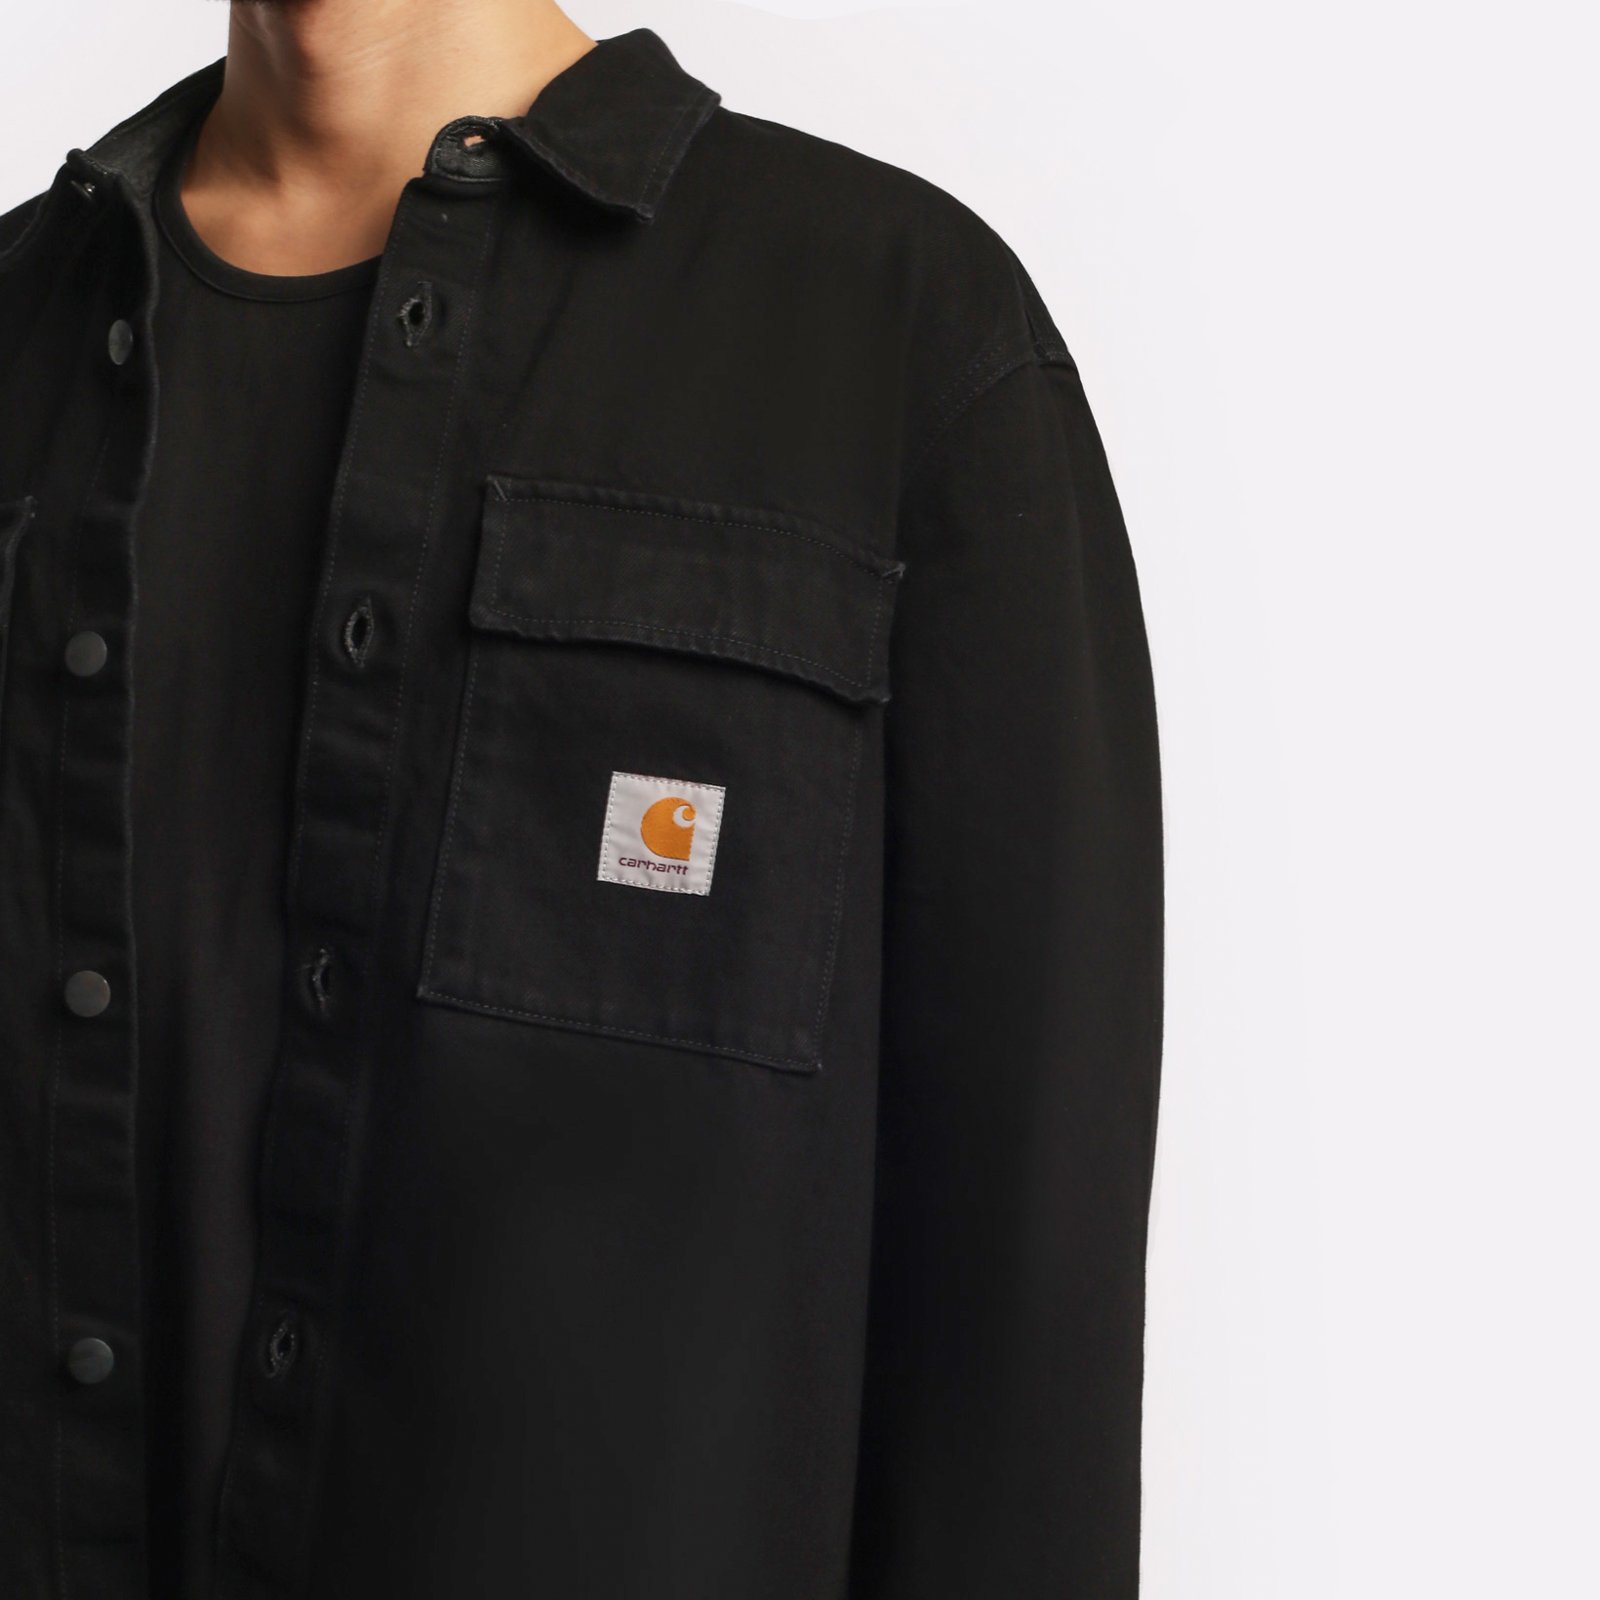 мужская куртка Carhartt WIP Manny Shirt Jac  (I032705-black)  - цена, описание, фото 4